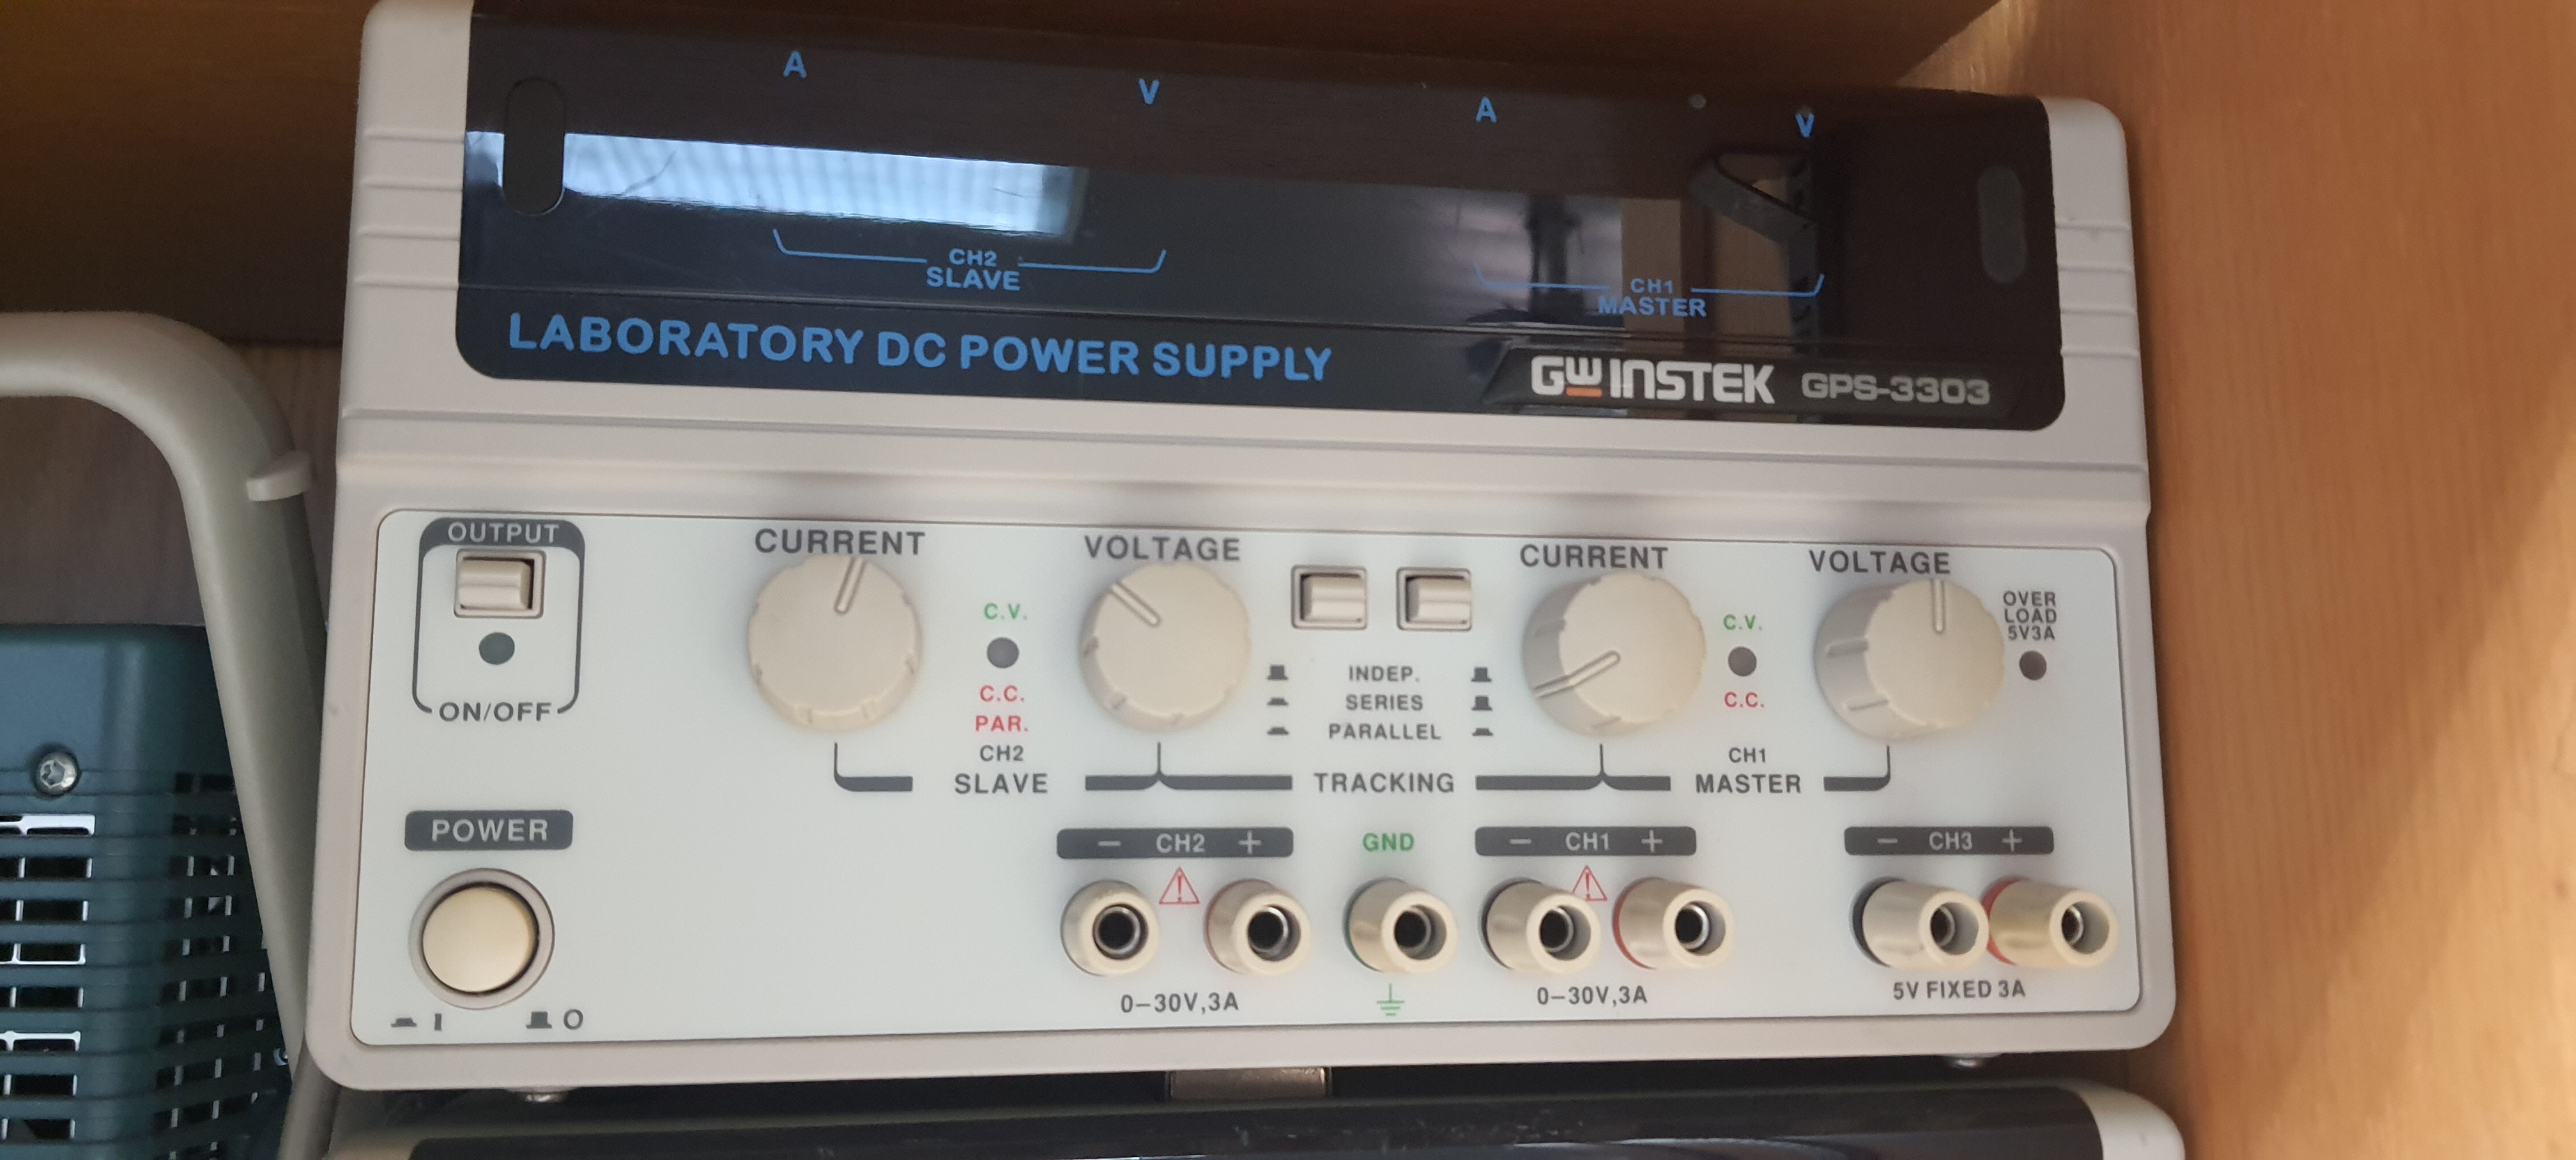 gw instek gps-3303 laboratory DC power supply